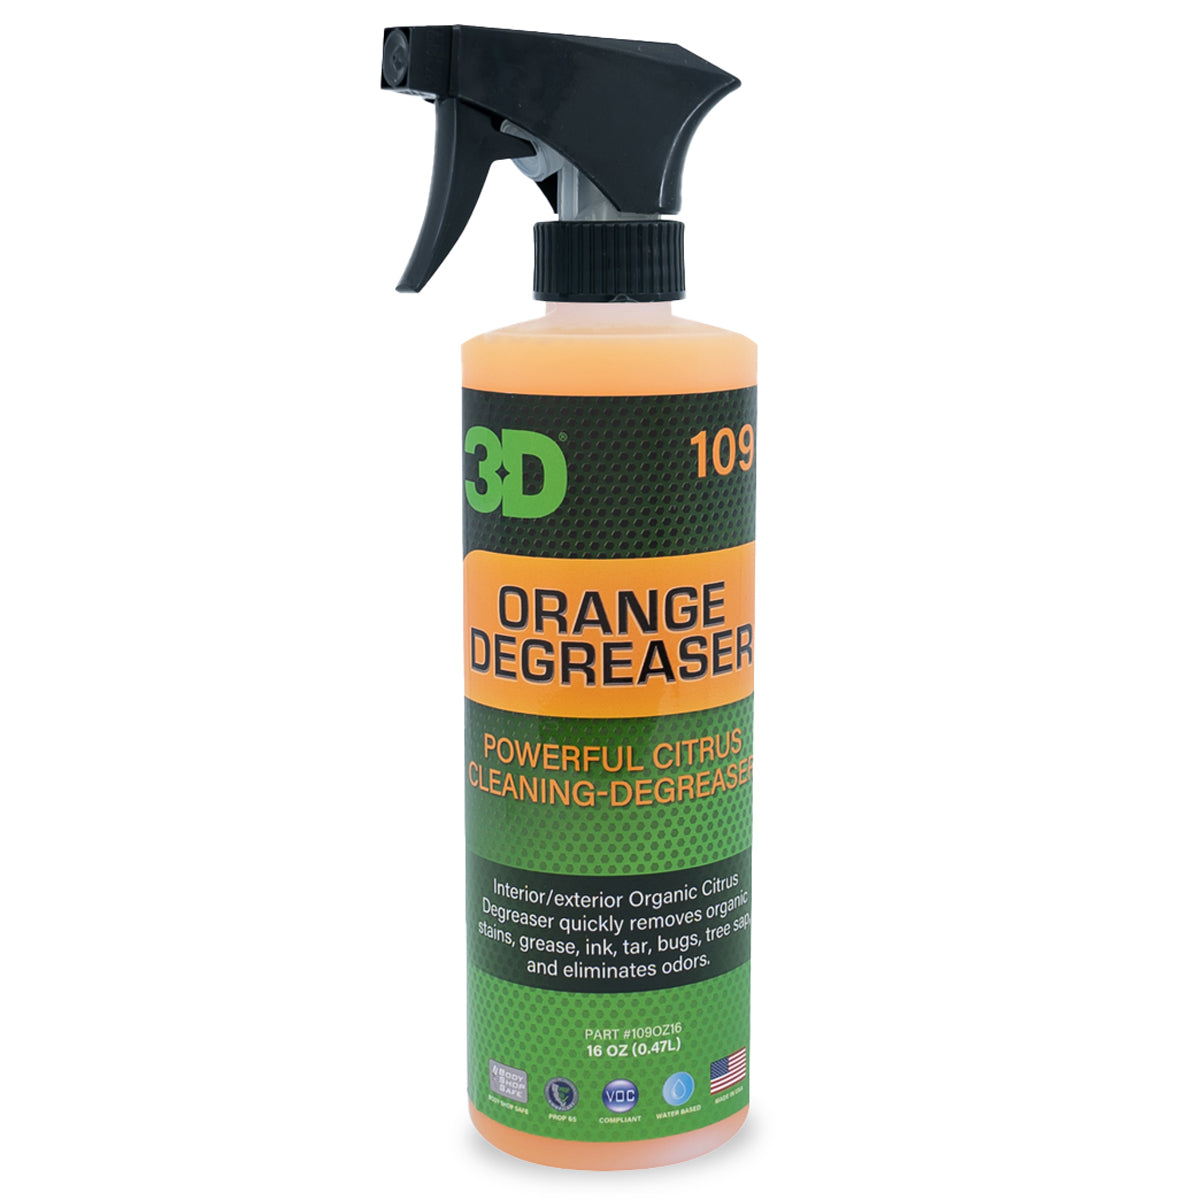 3D Orange Degreaser Citrus Cleaner 1 Gallon